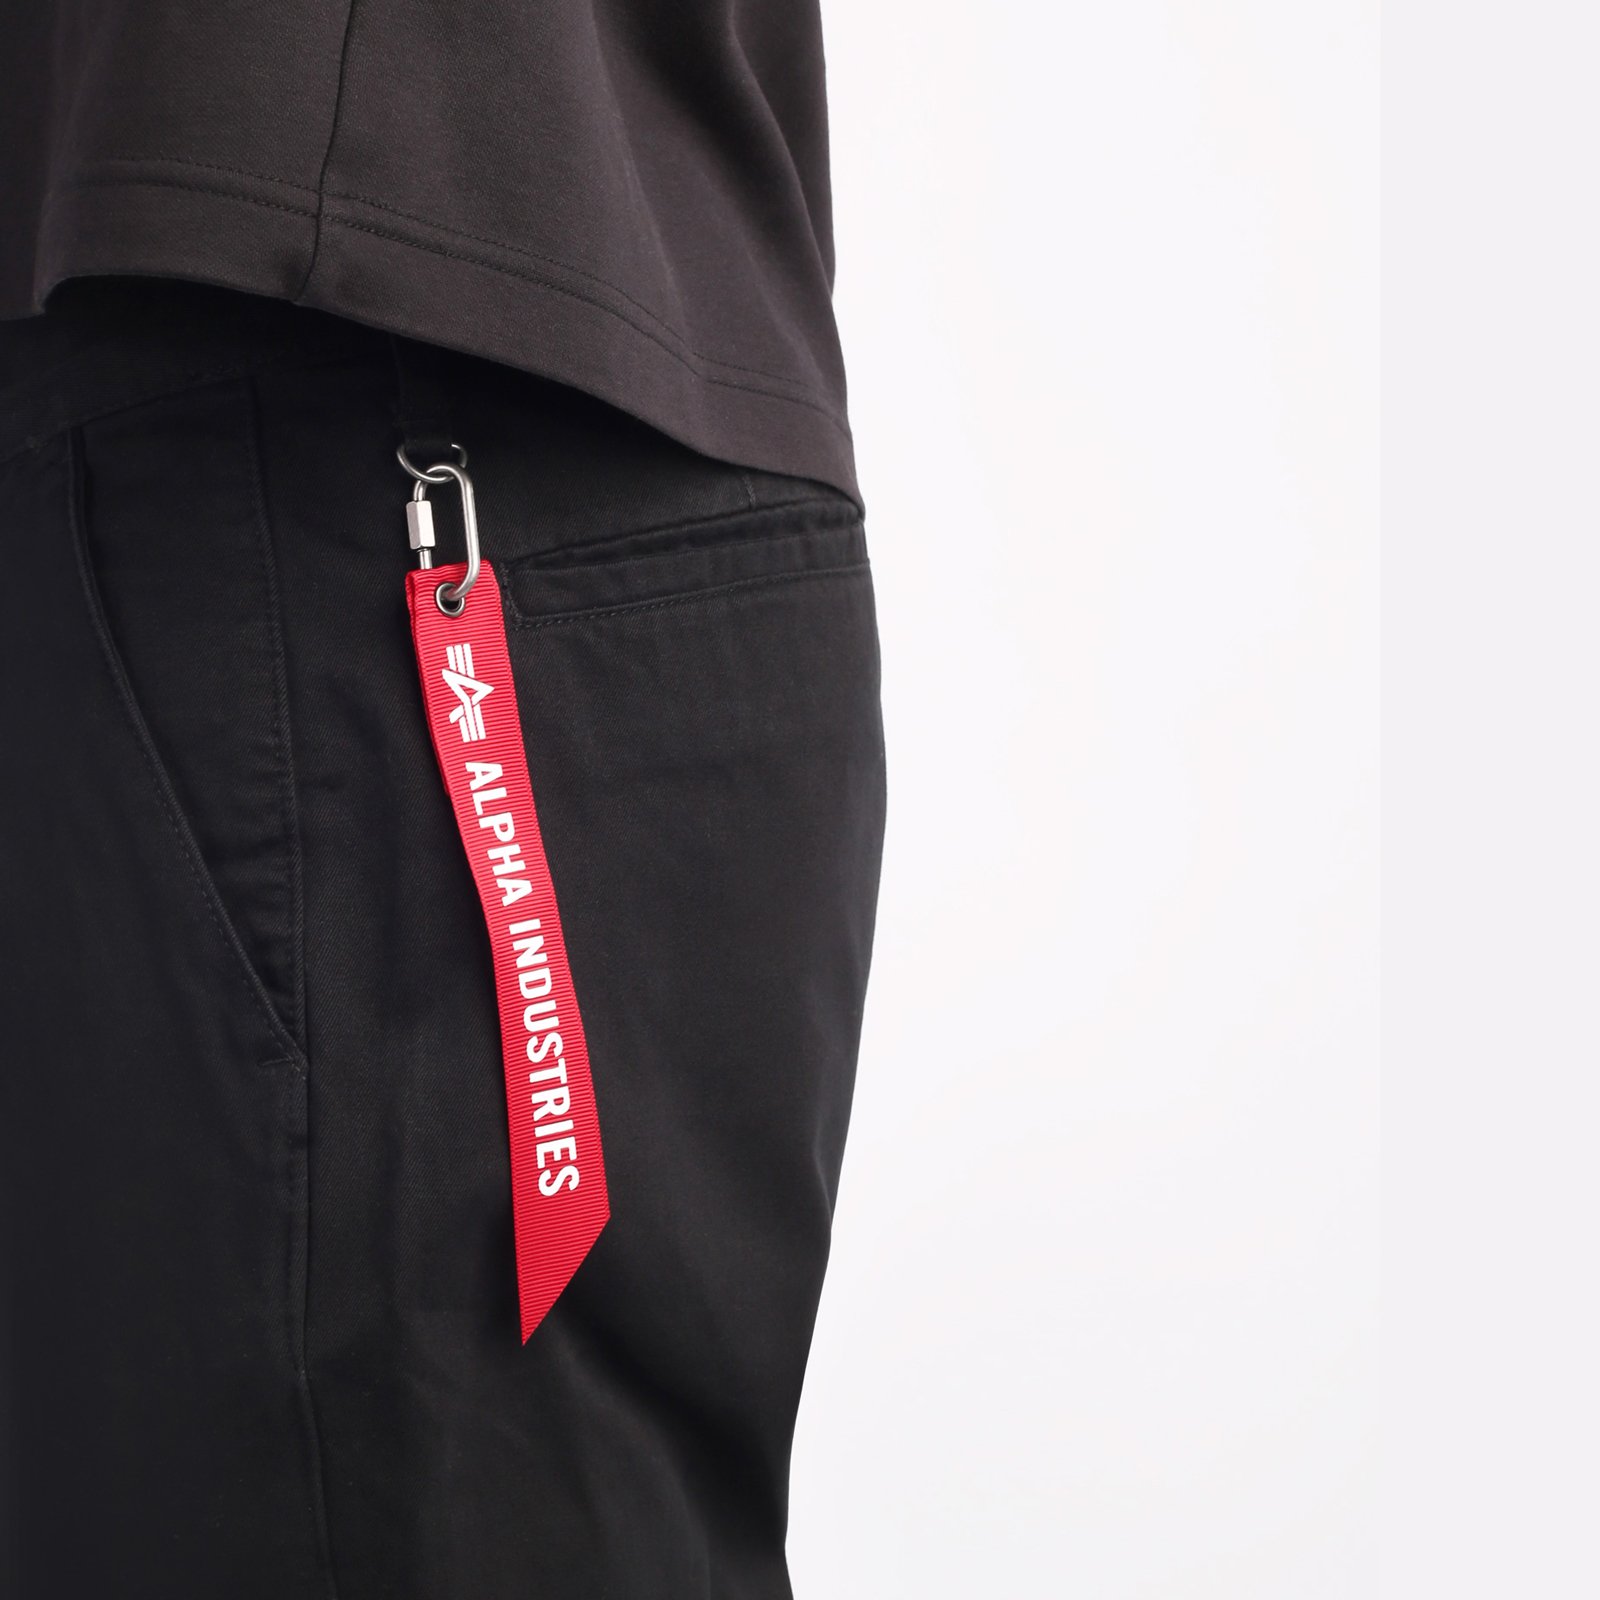 мужские брюки Alpha Industries Classic Trousers  (MBC53500CO-black)  - цена, описание, фото 4